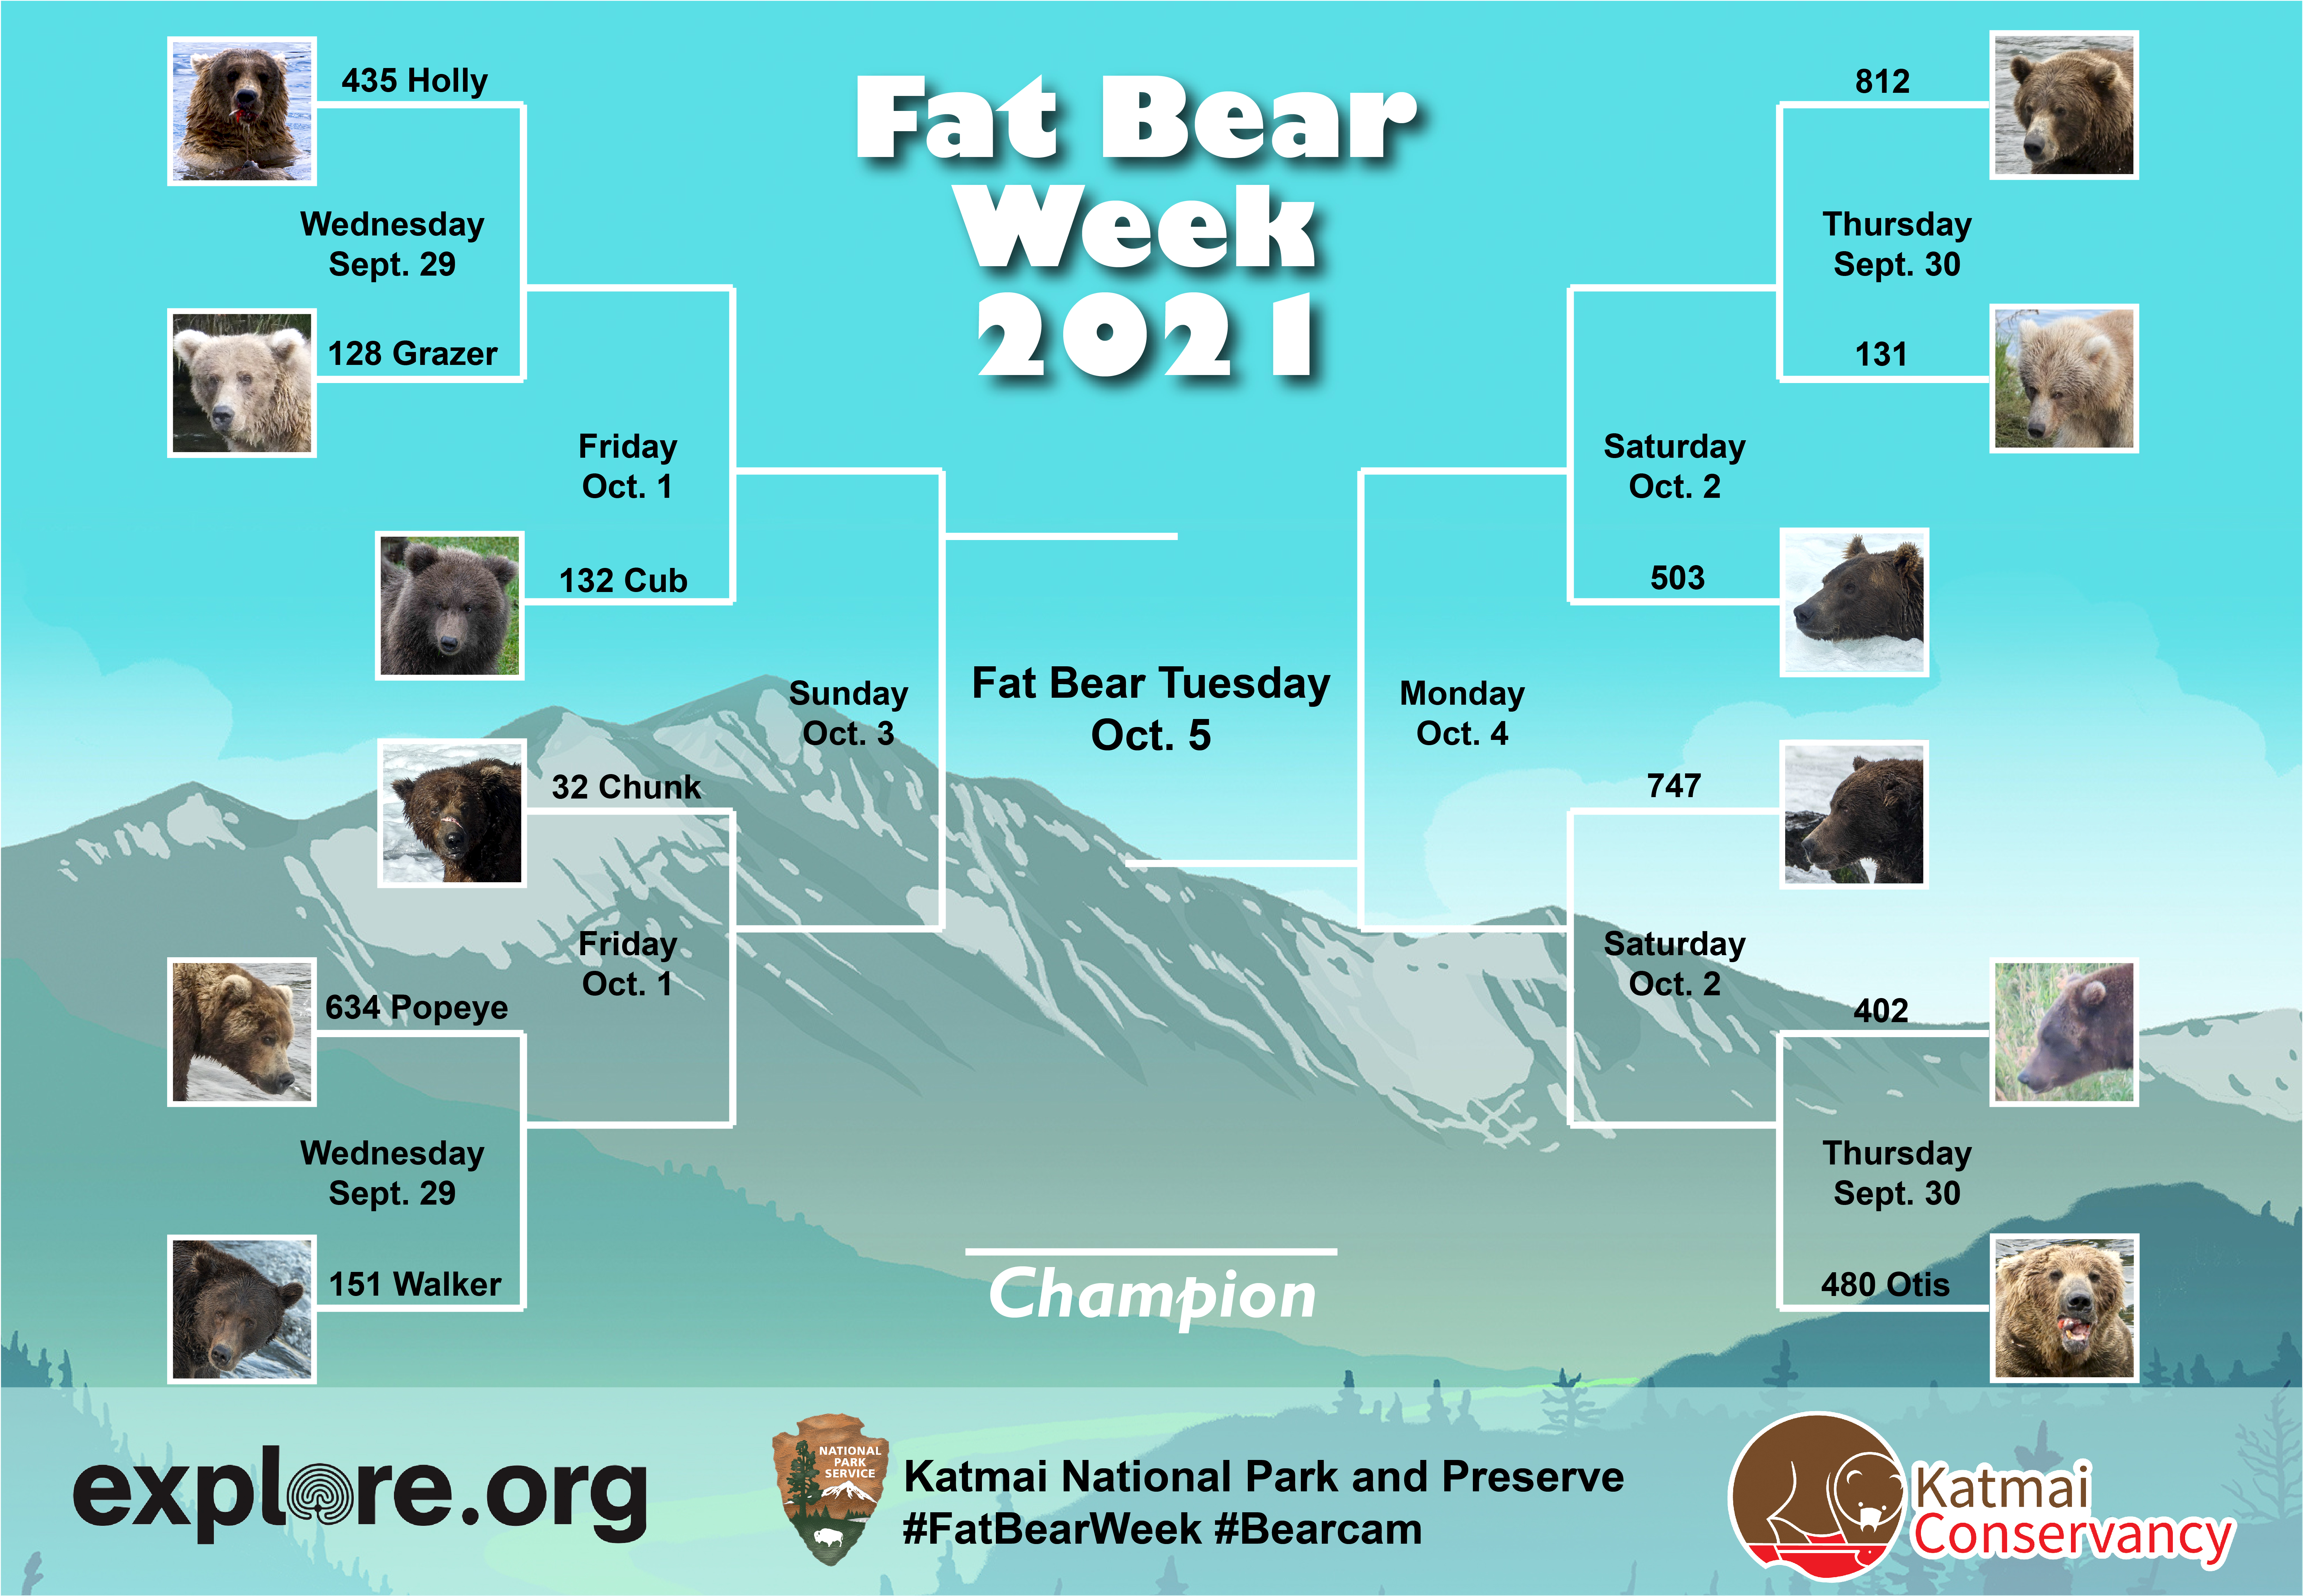 Fat Bear Week 2021 Bracket with 12 bear photos. Match 1: 435 vs. 128. Match 2: 151 vs. 634. Match 3: 812 vs. 131. Match 4: 480 vs. 402. Match 5: Winner of Match 1 vs. Winner of Fat Bear Junior. Match 6: Winner of Match 2 vs. 32. Match 7: Winner of Match 3